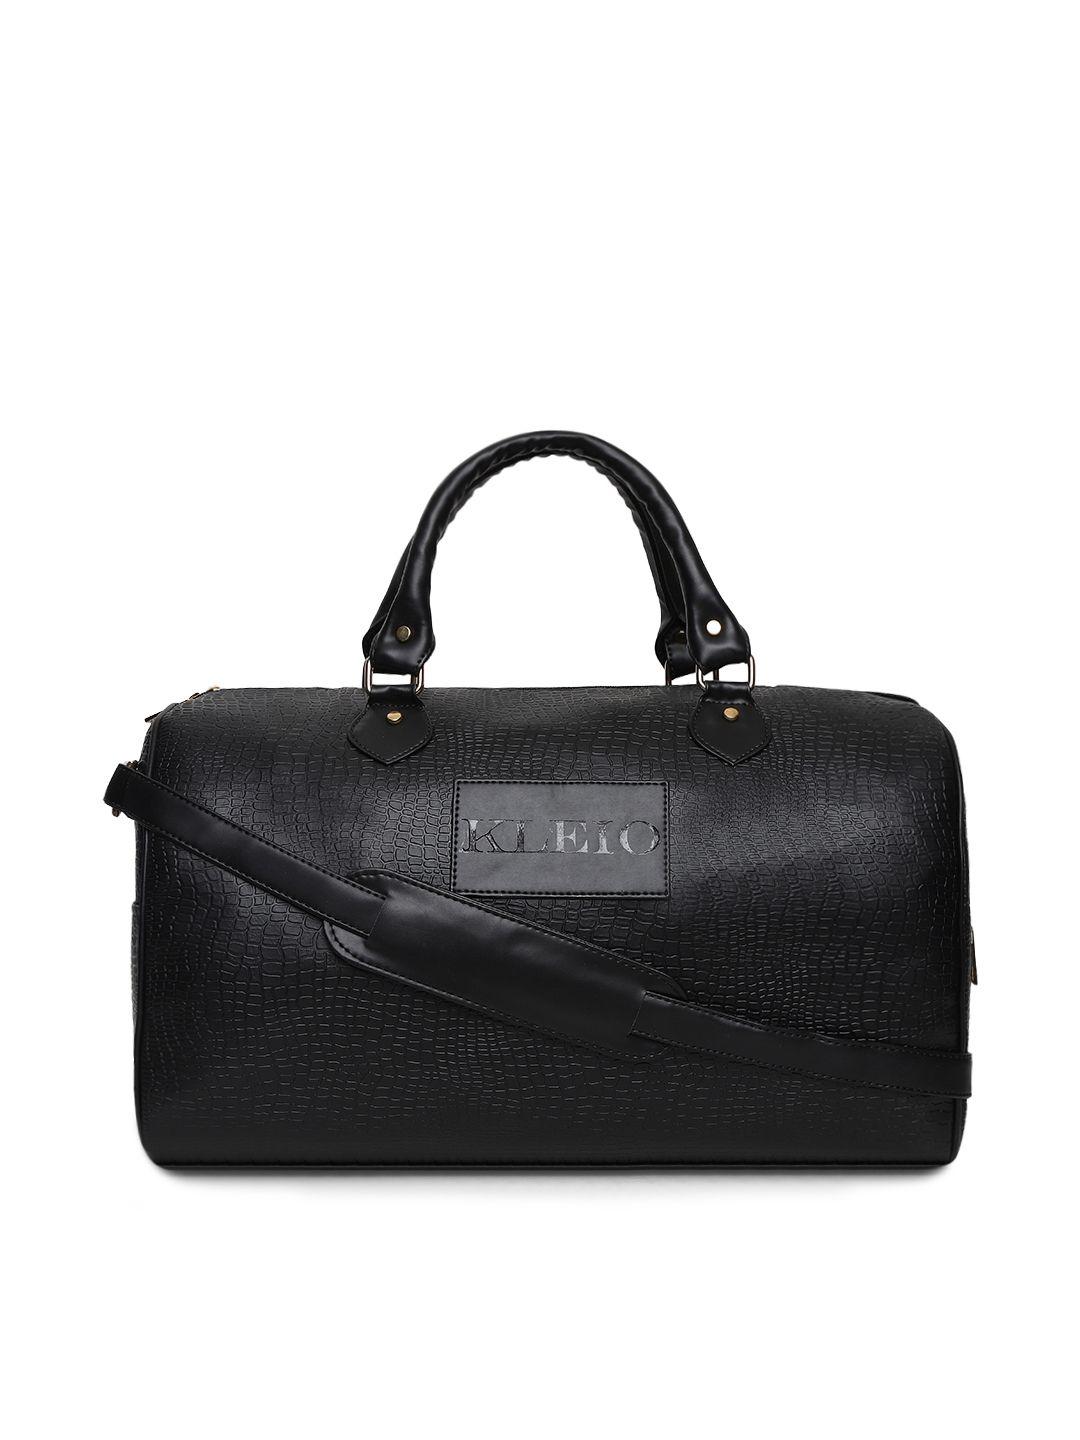 kleio unisex black textured duffel bag